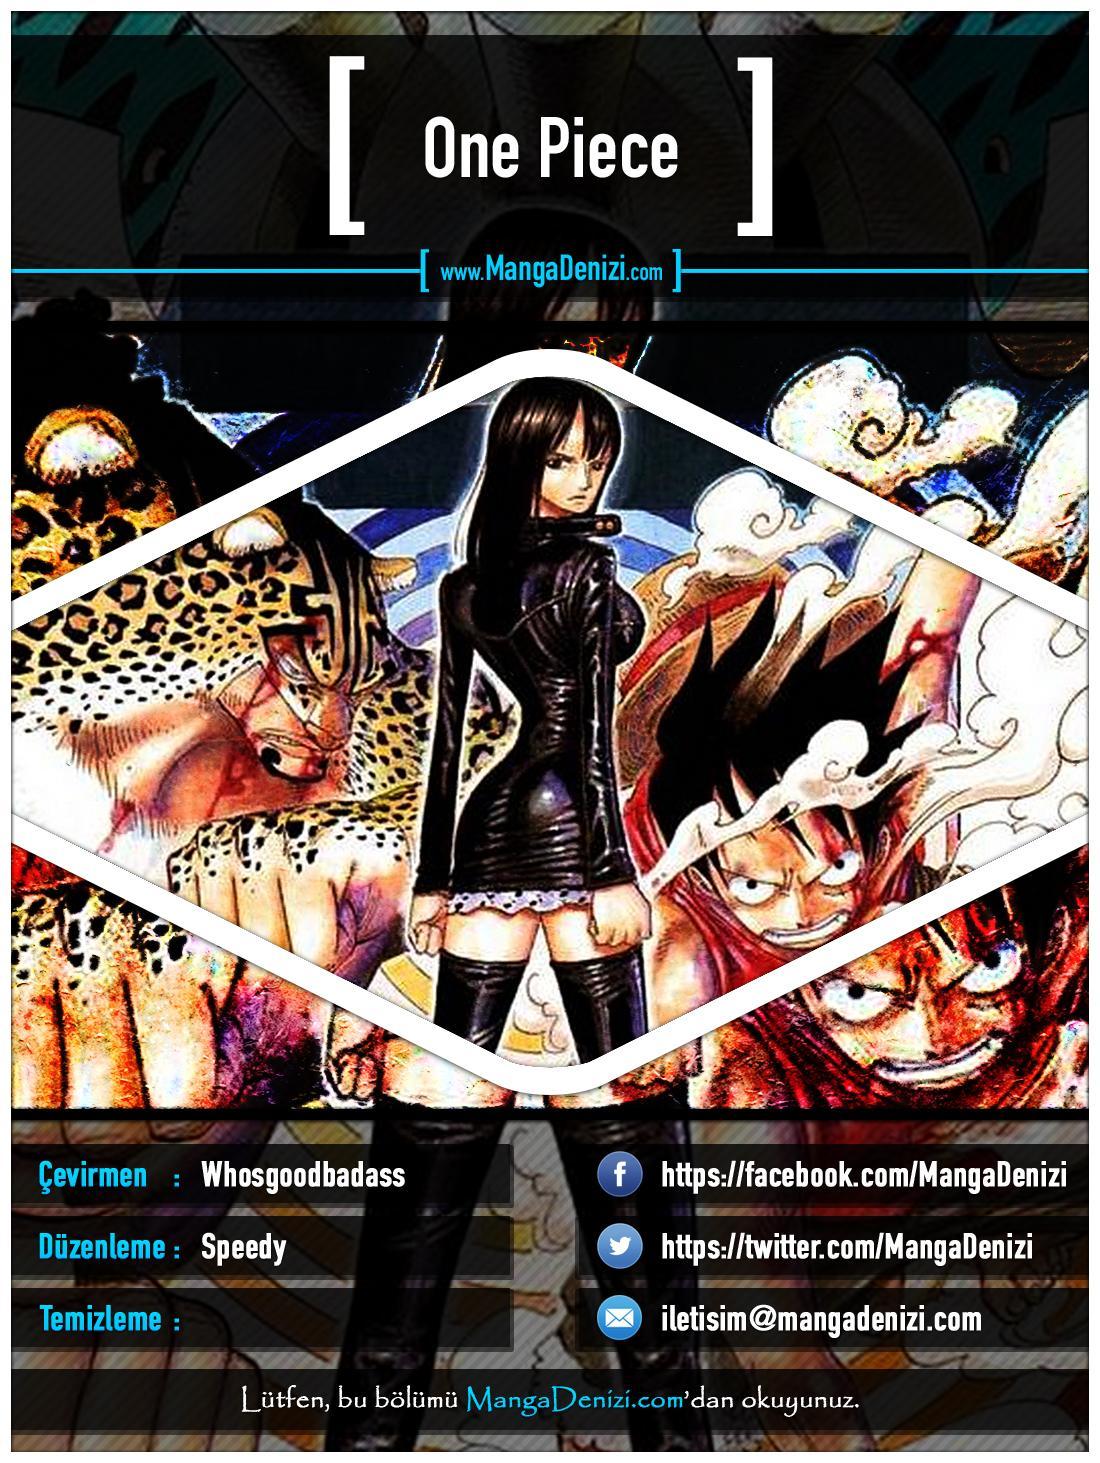 One Piece [Renkli] mangasının 0317 bölümünün 1. sayfasını okuyorsunuz.